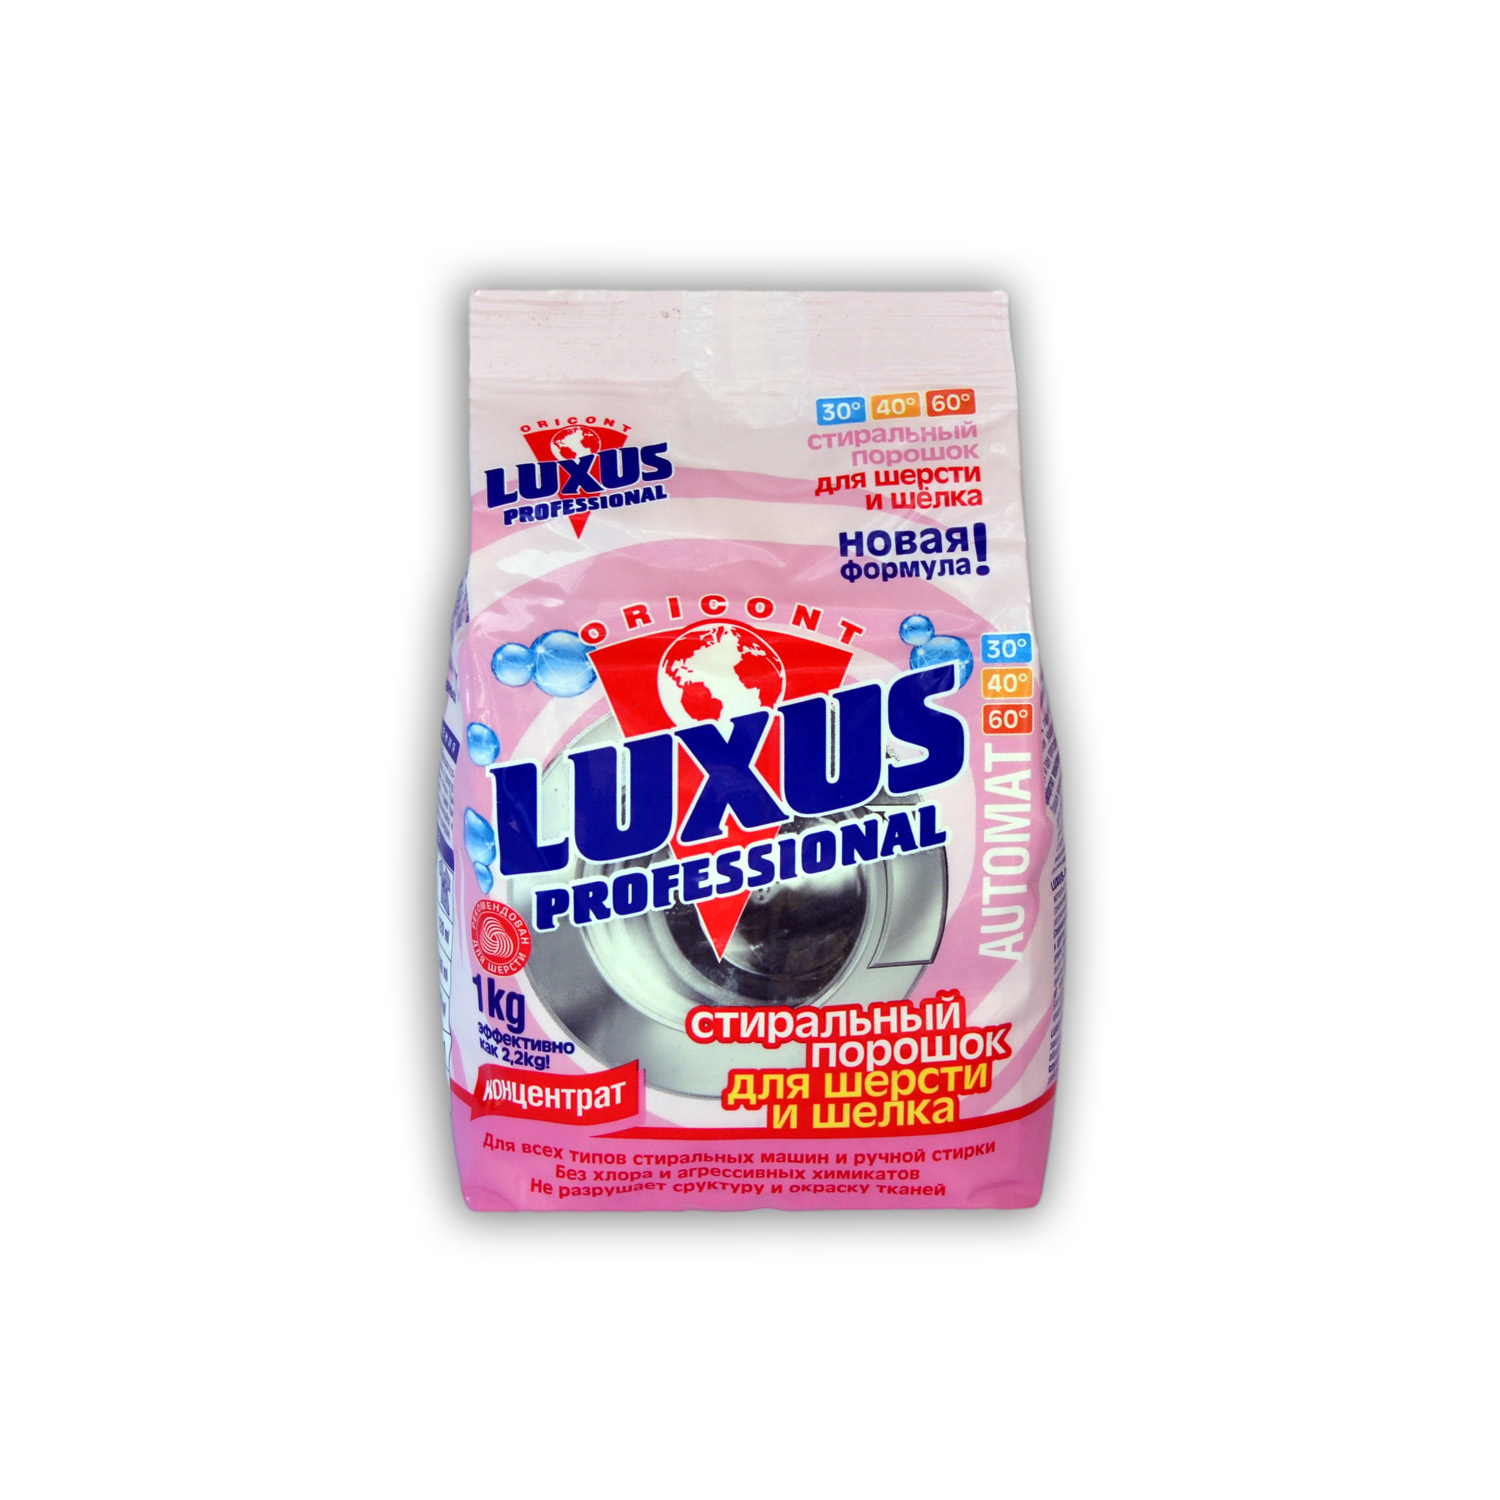 Luxus Professional Универсальный стиральный порошок для шерсти и шелка купить оптом